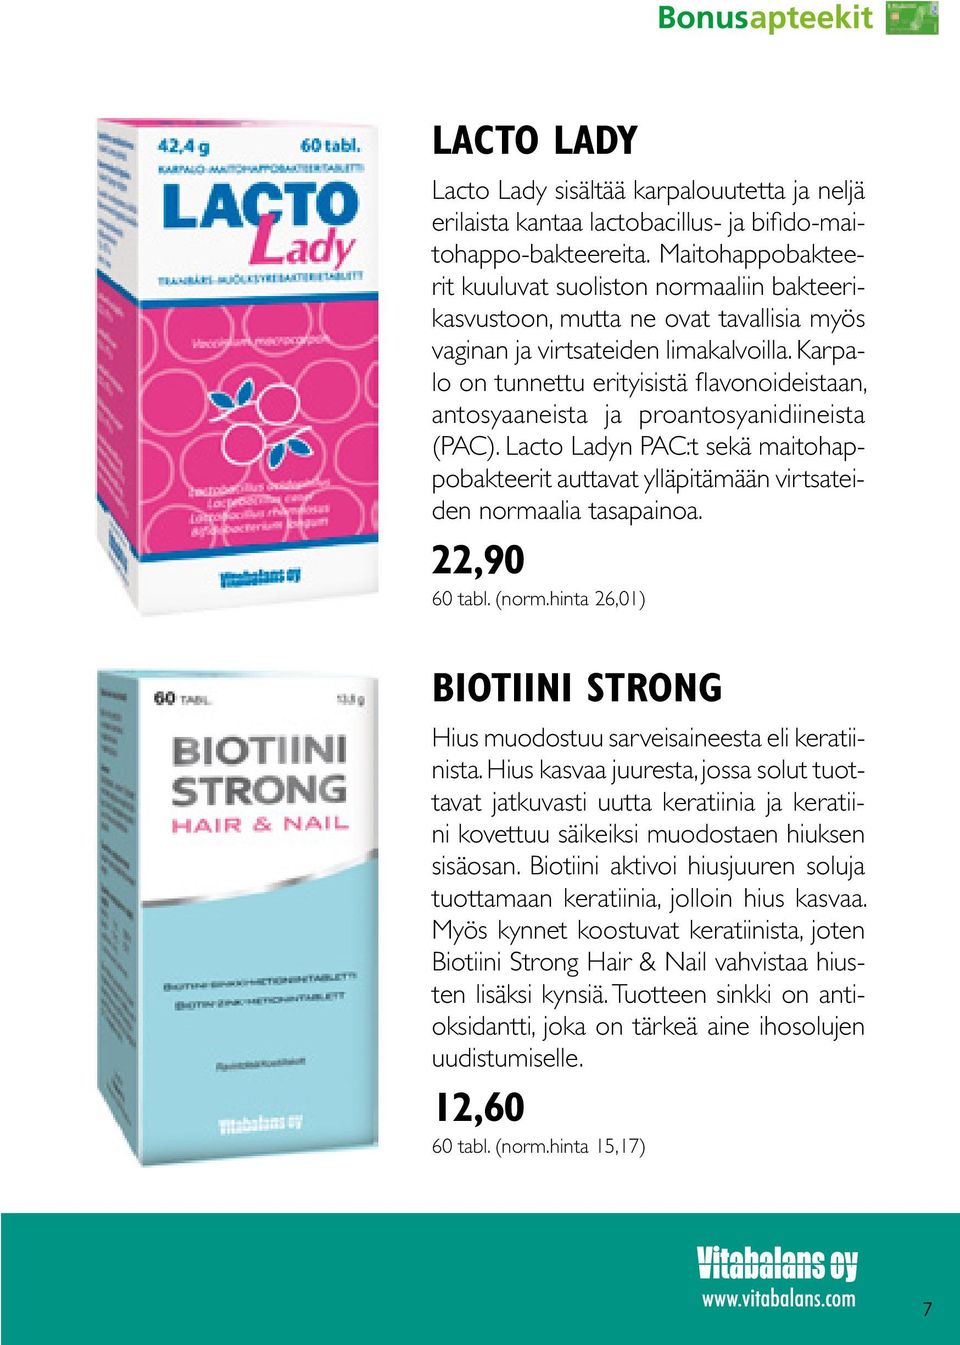 Karpalo on tunnettu erityisistä flavonoideistaan, antosyaaneista ja proantosyanidiineista (PAC). Lacto Ladyn PAC:t sekä maitohappobakteerit auttavat ylläpitämään virtsateiden normaalia tasapainoa.